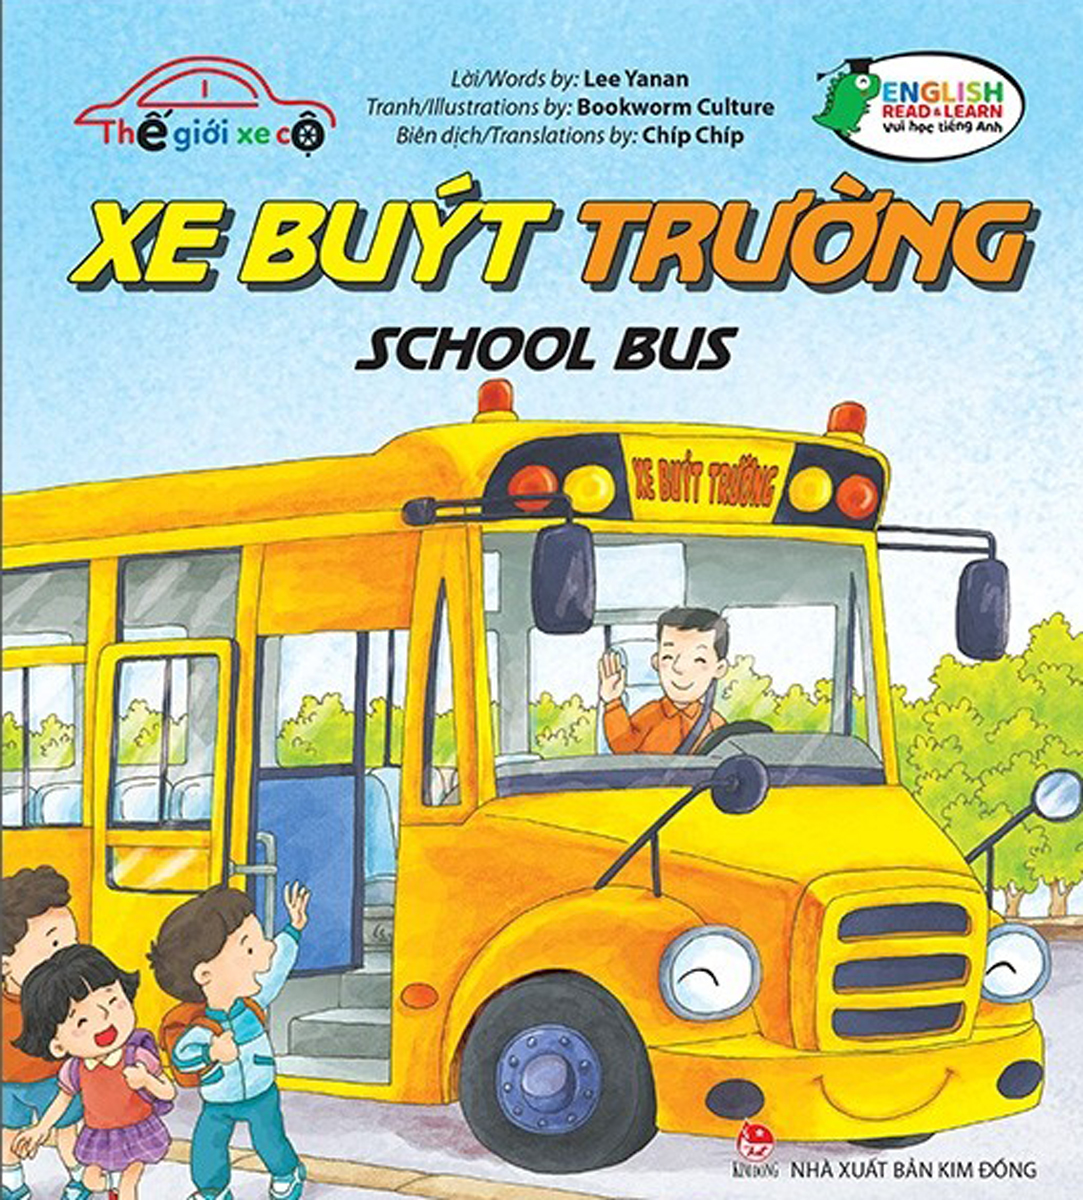 Thế Giới Xe Cộ - Xe Buýt Trường - School Bus